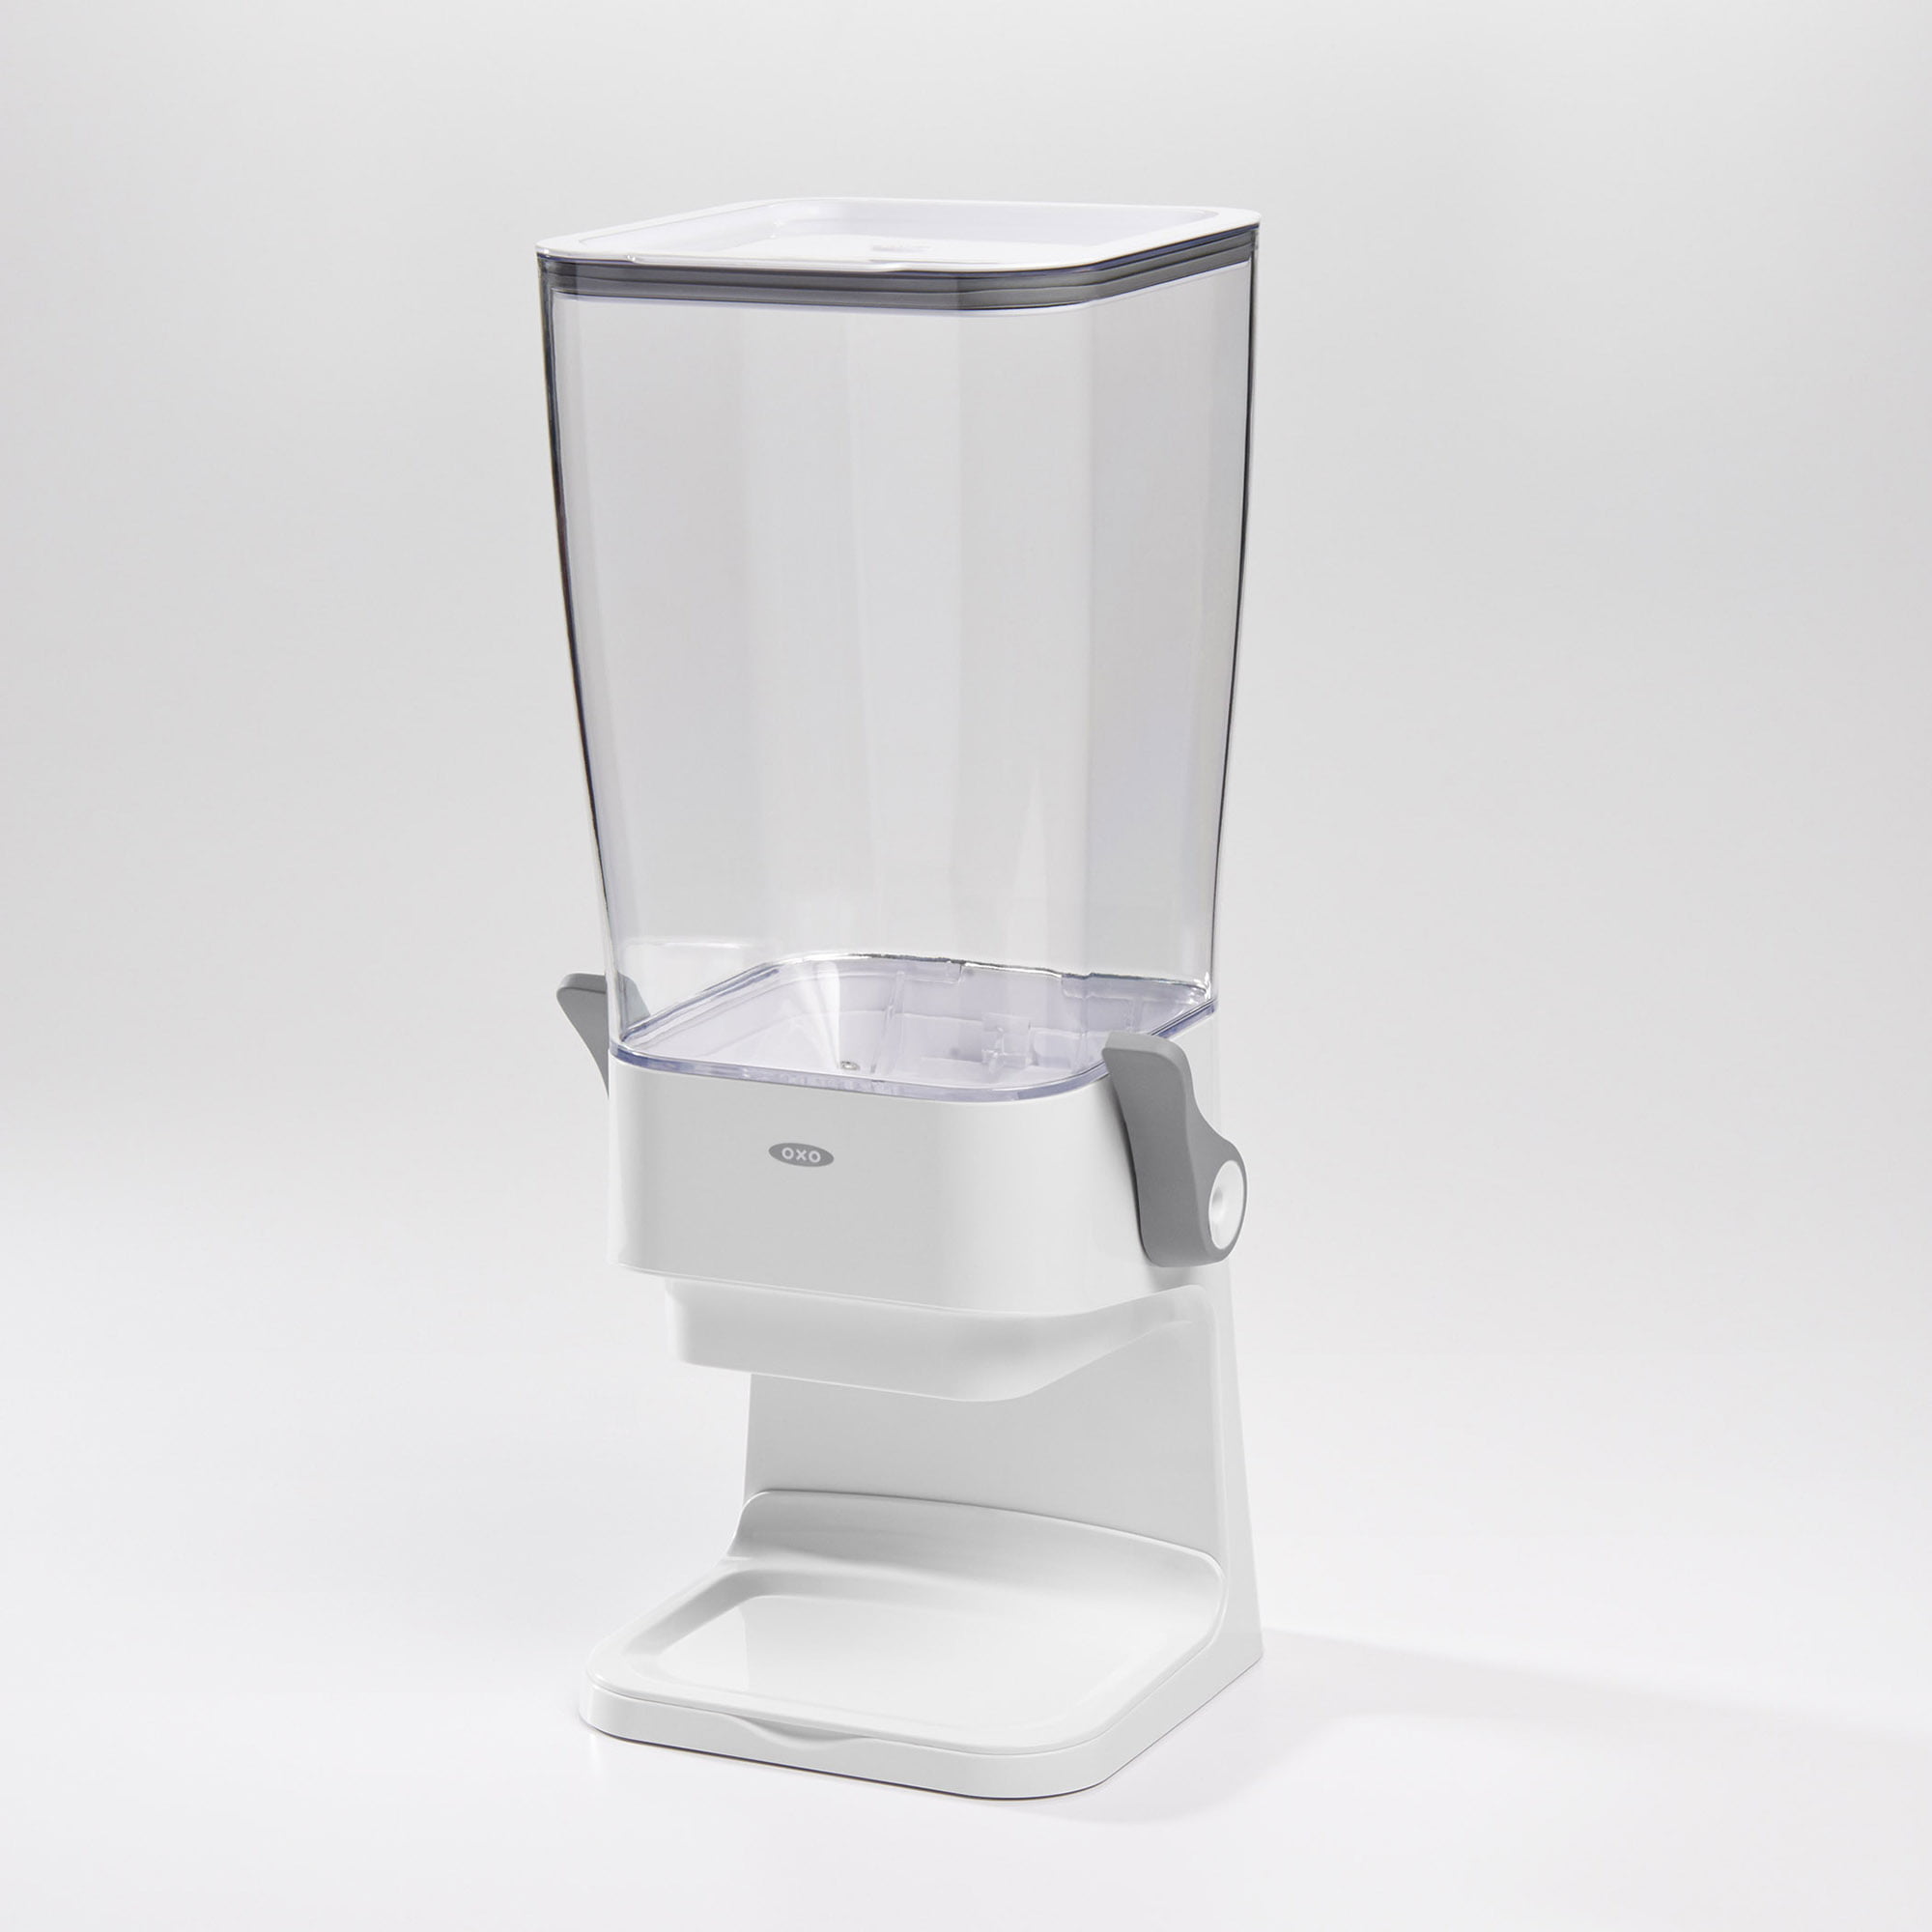 instock] OXO Good Grips Sugar Dispenser, 2.5 x 5.5-Inch, White